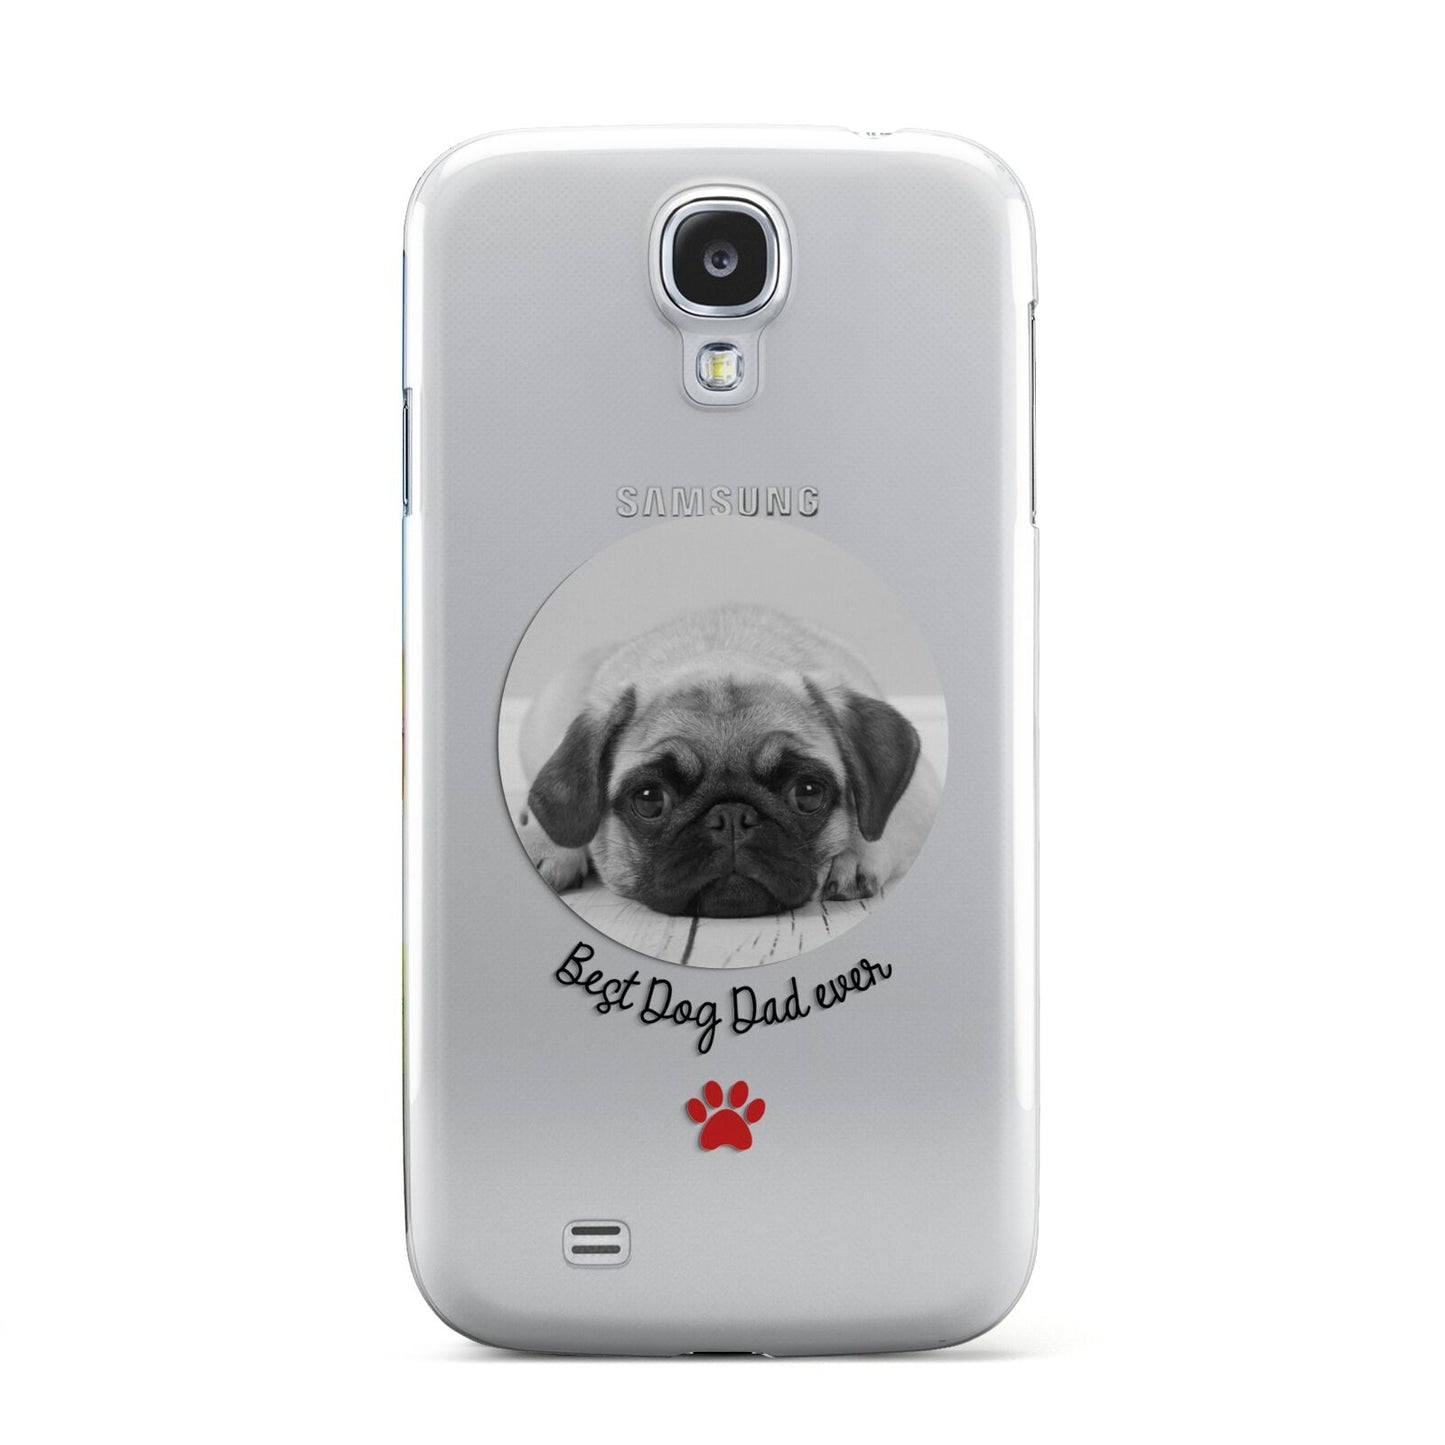 Best Dog Dad Ever Photo Upload Samsung Galaxy S4 Case